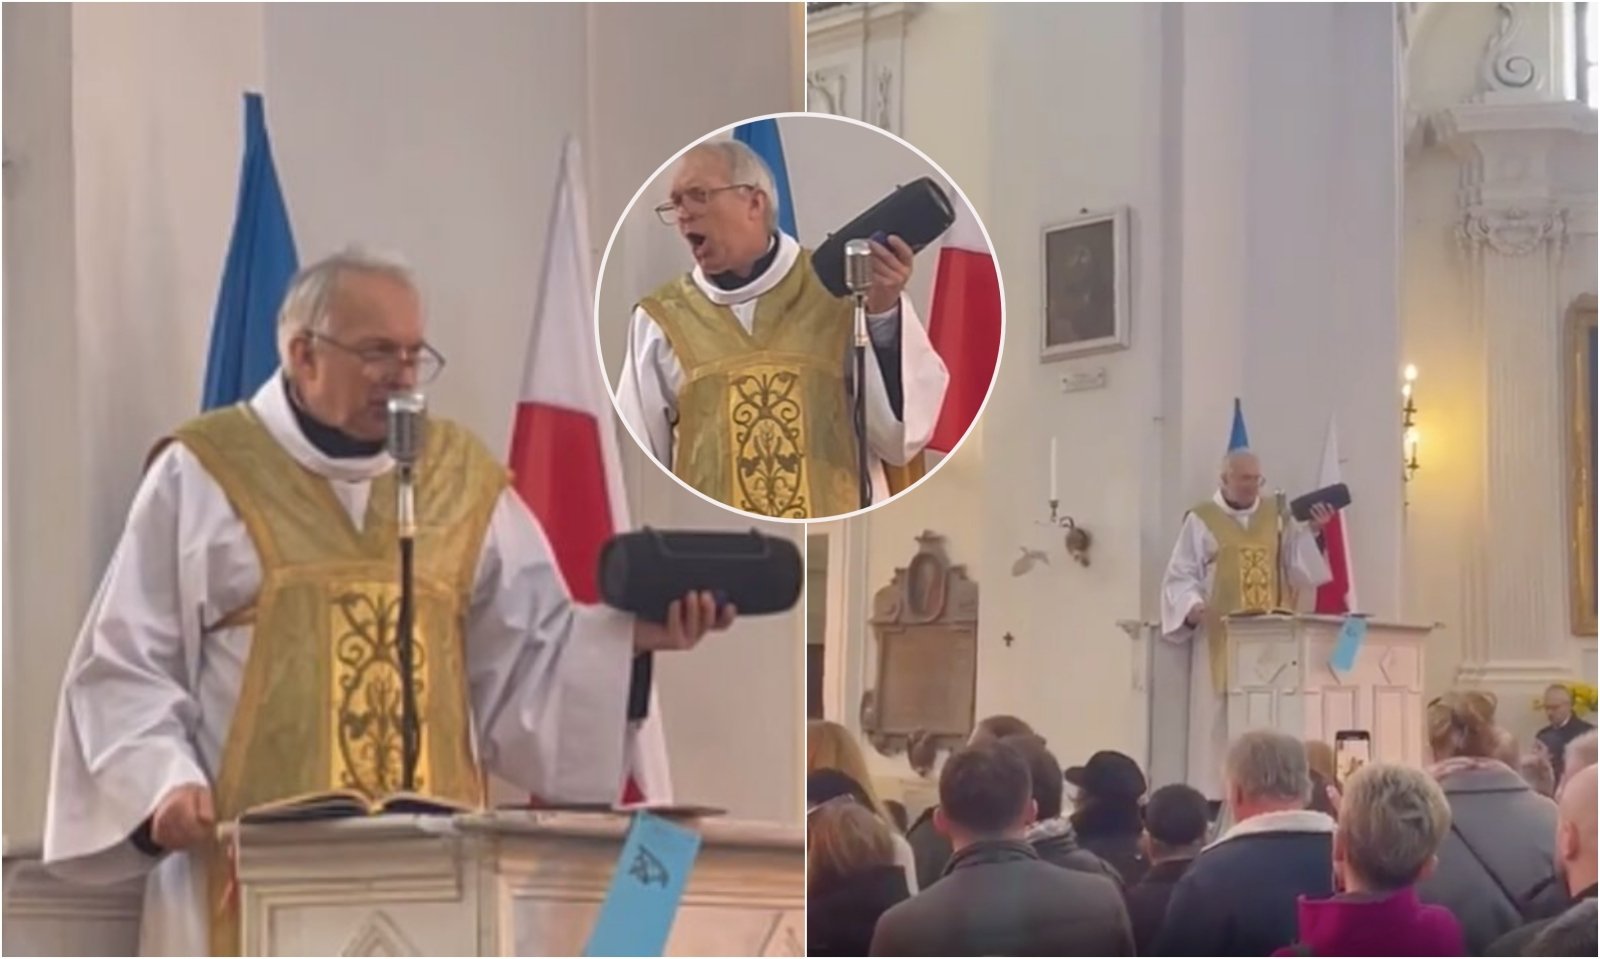 Akt podczas mszy w Polsce zaskakuje miliony: ksiądz z głośnikiem w dłoniach wywołuje sensację internetową